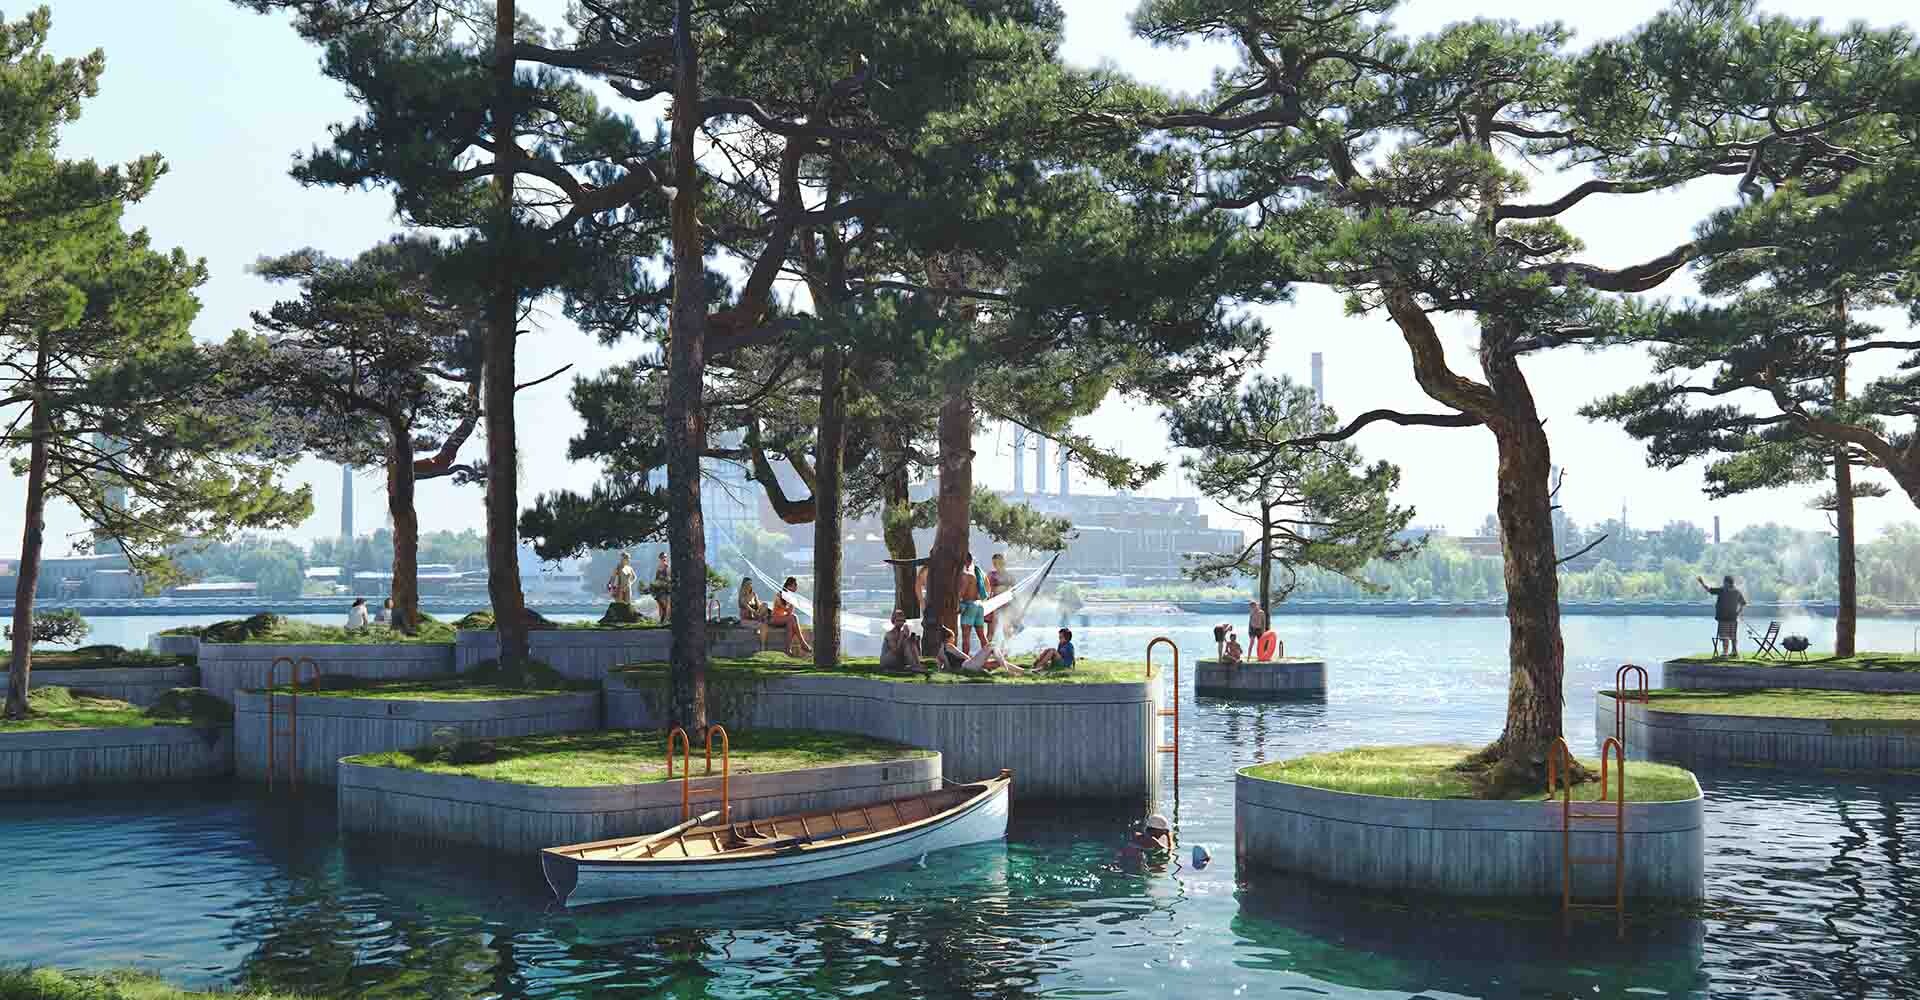 Un “parquipiélago” de islas flotantes para dar más espacio público a Copenhague